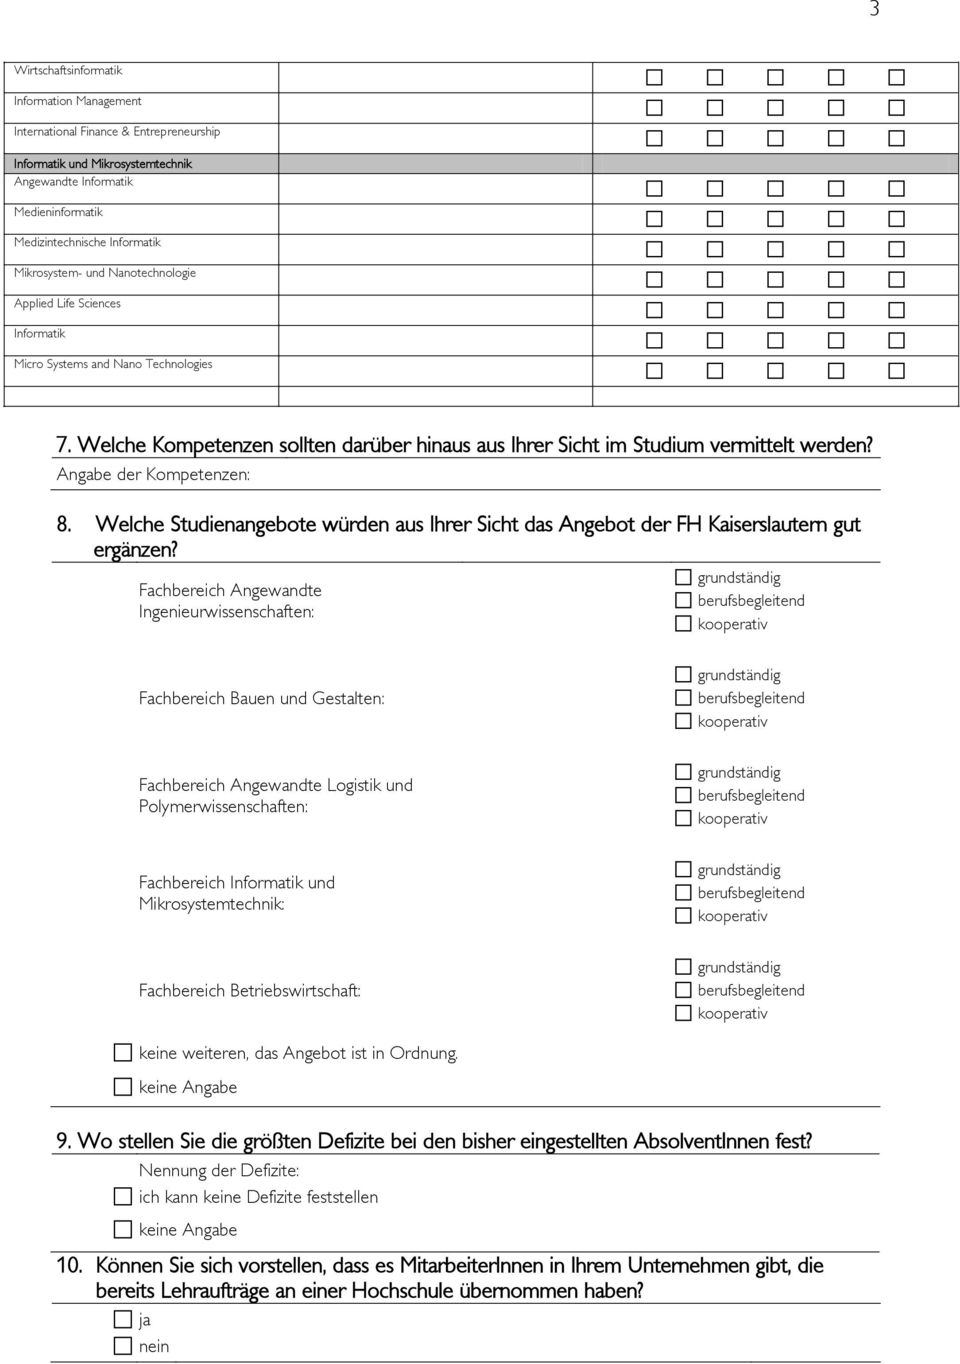 Angabe der Kompetenzen: 8. Welche Studienangebote würden aus Ihrer Sicht das Angebot der FH Kaiserslautern gut ergänzen?